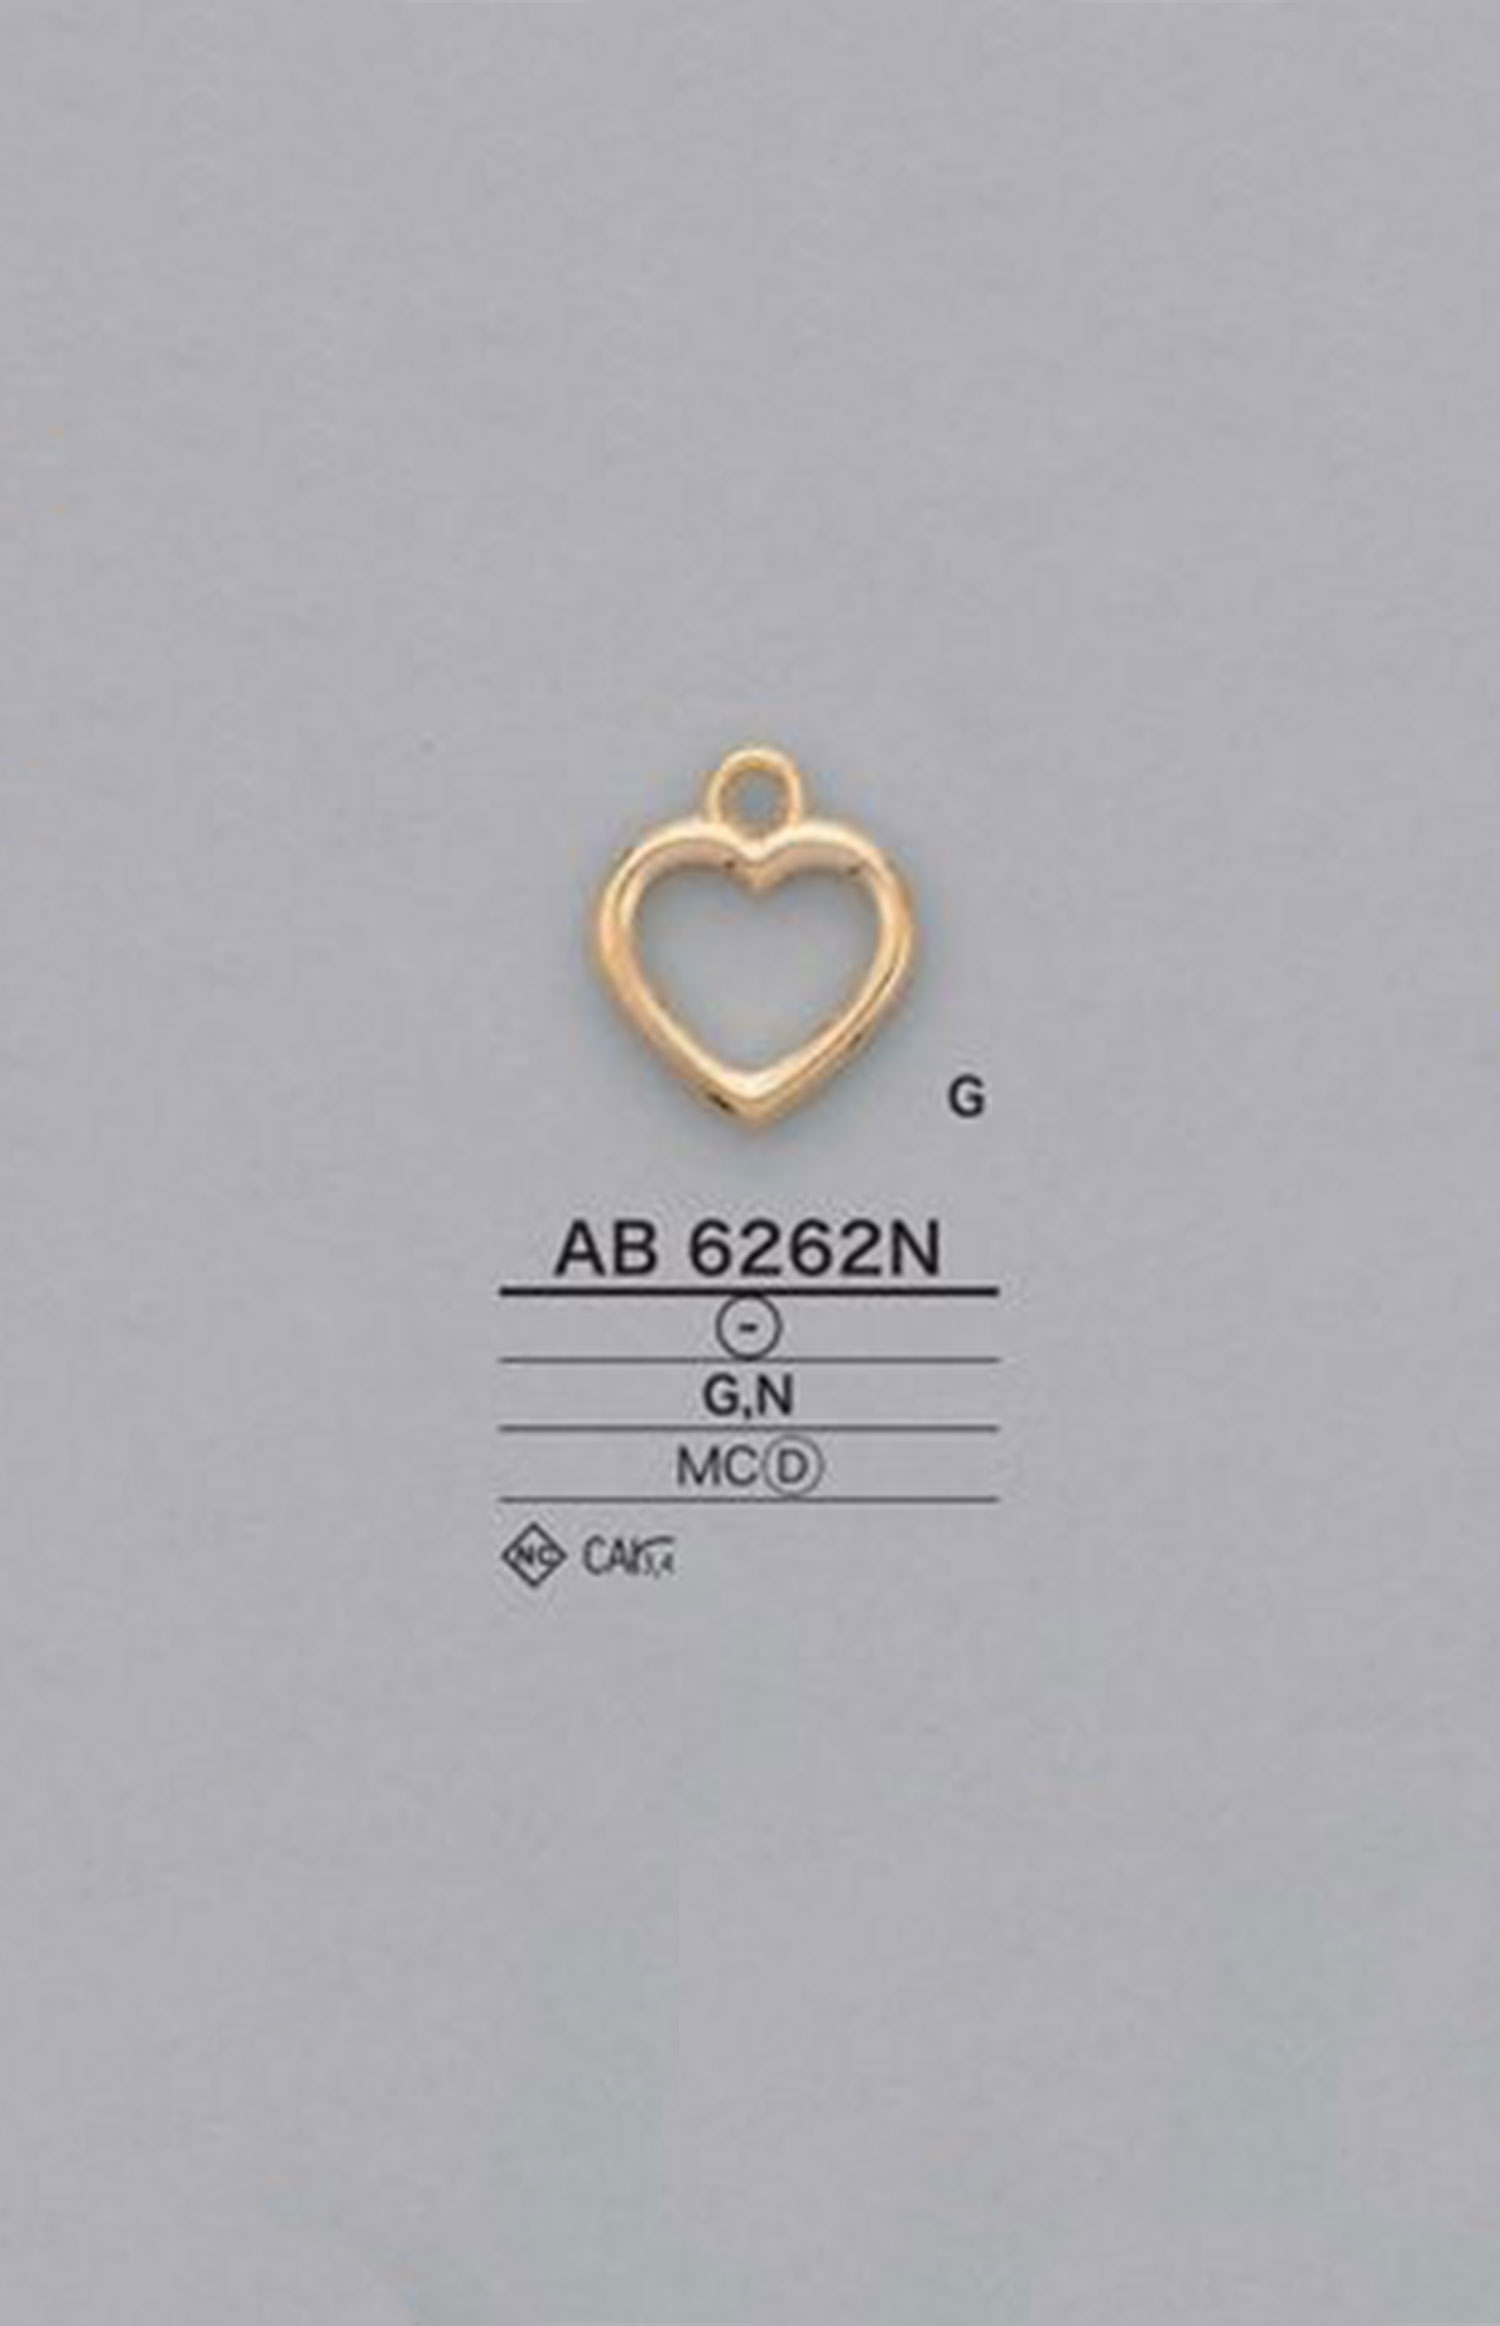 AB6262N 하트형 지퍼 포인트(지퍼 슬라이더) IRIS